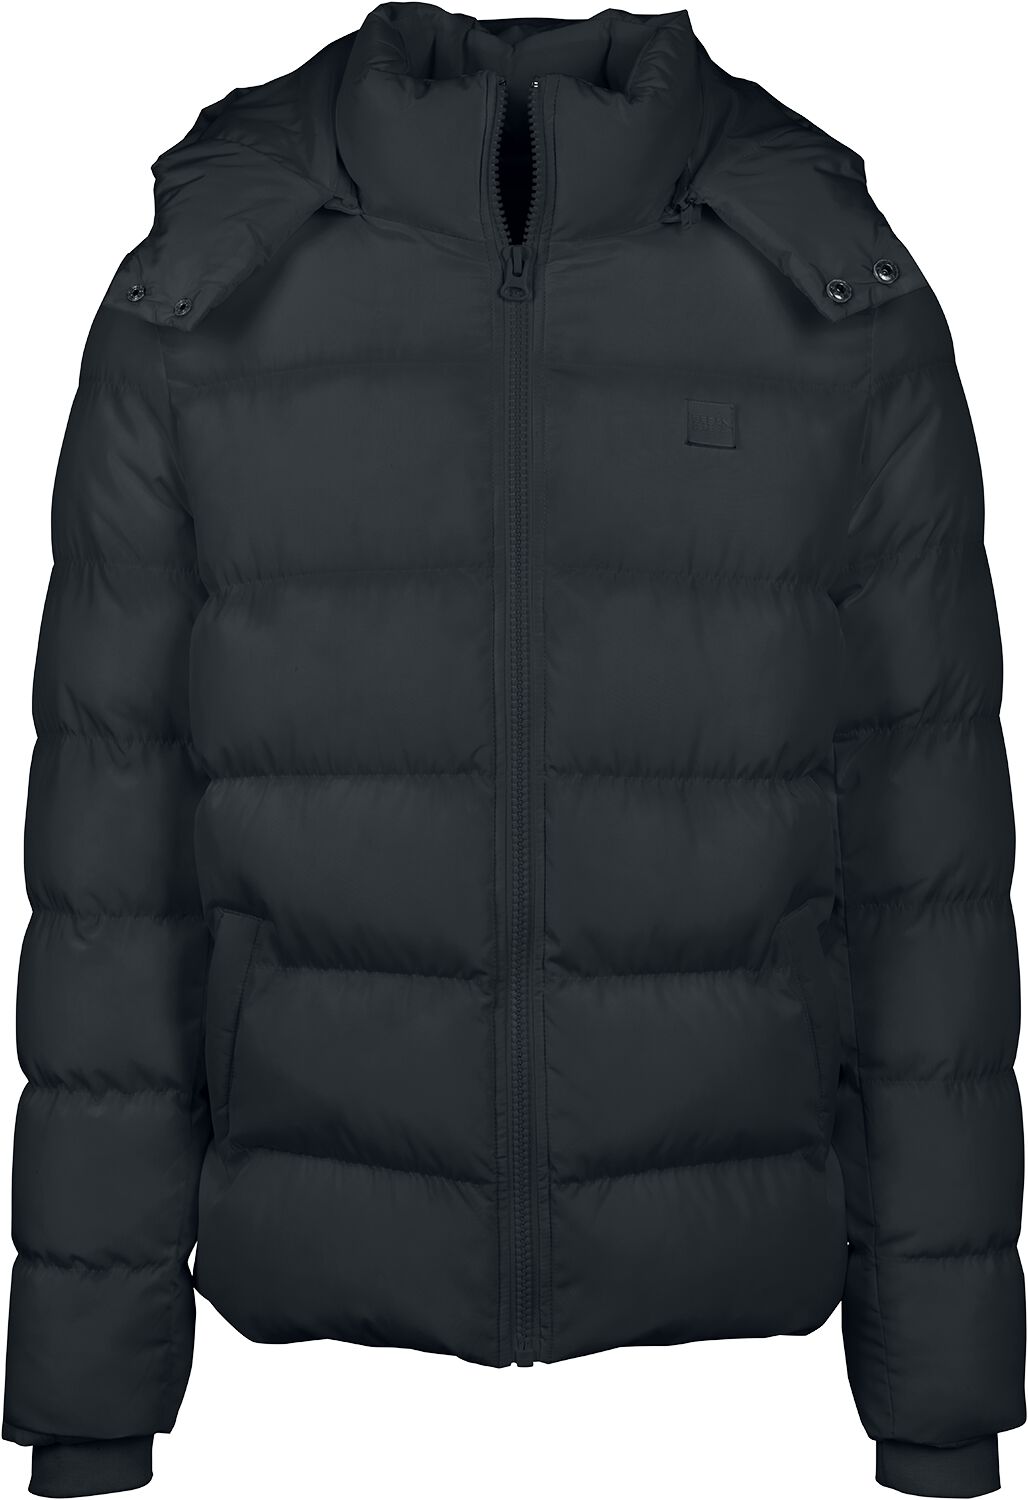 Urban Classics Übergangsjacke - Hooded Puffer Jacket - L bis 5XL - für Männer - Größe XXL - schwarz